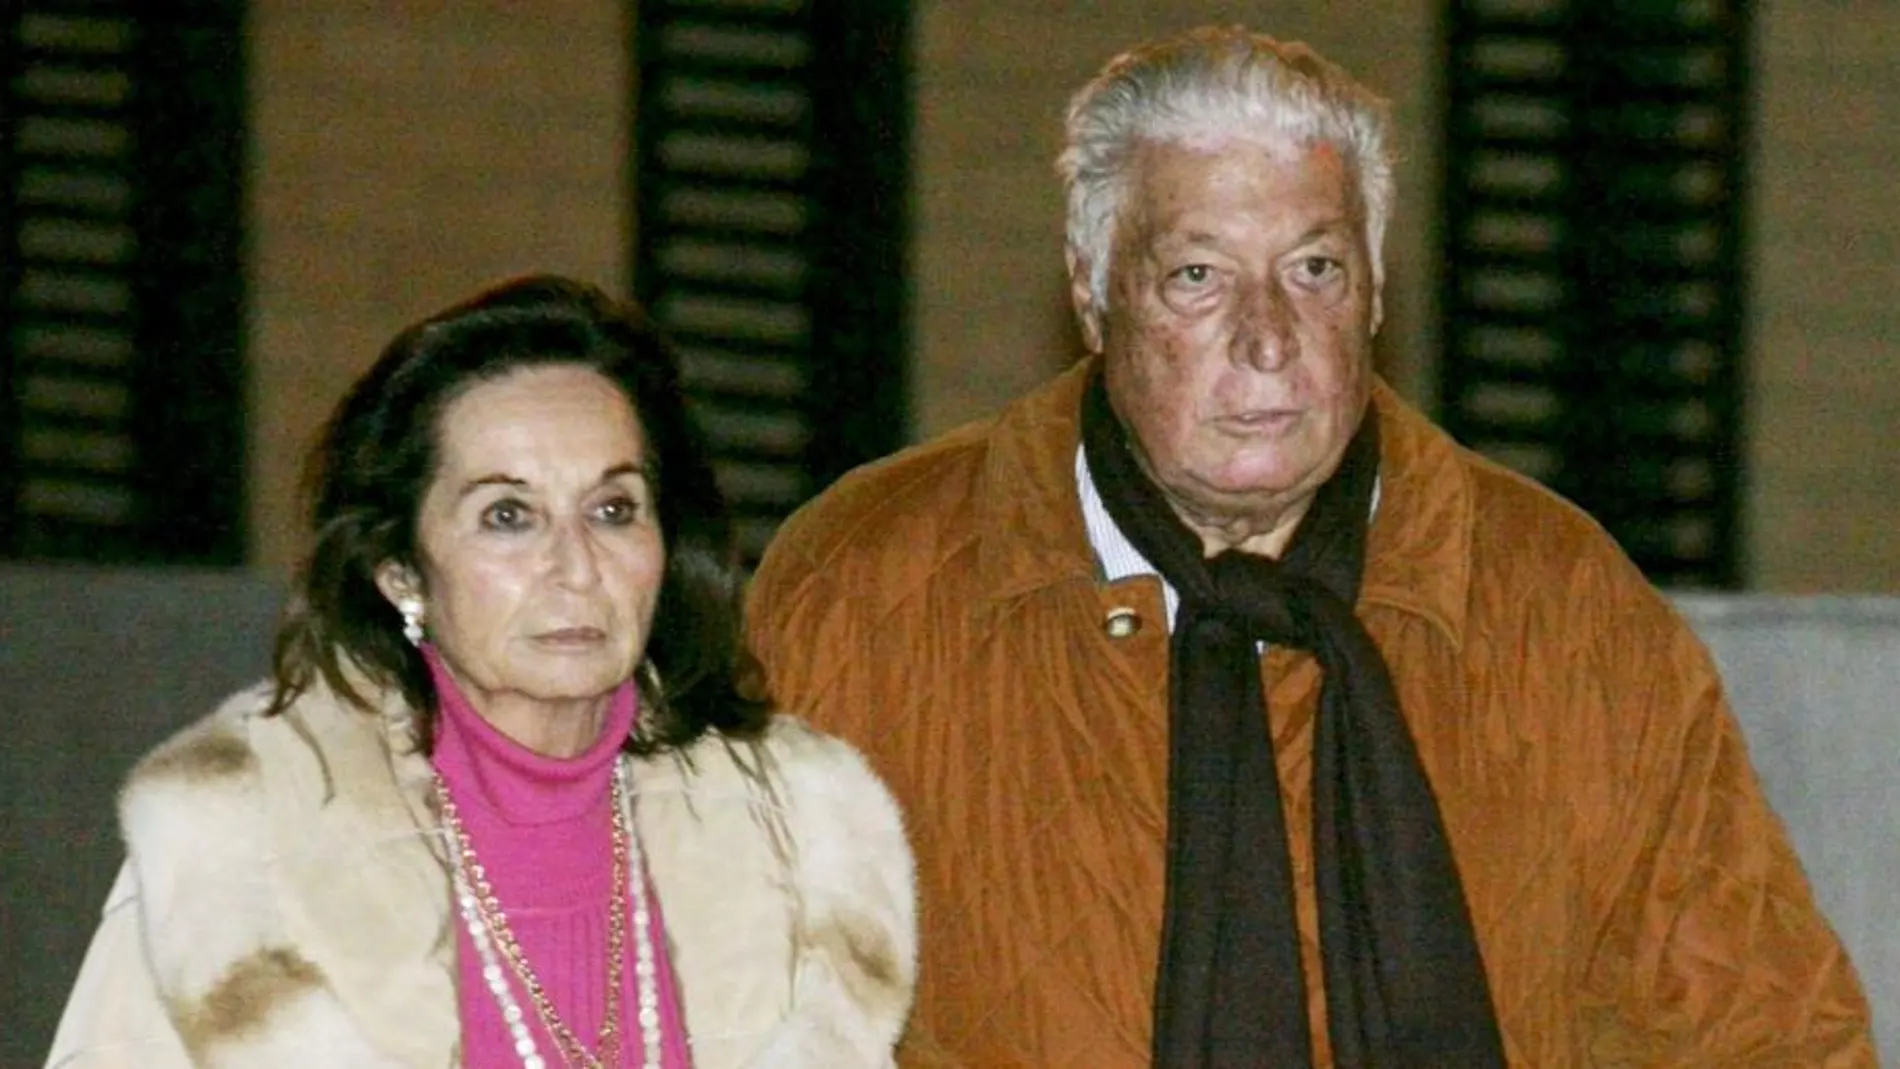 El ex alto cargo de la Generalitat en la etapa de CiU, Maciá Alavedra, junto a su mujer, a su salida del centro penitenciario Brians 2.